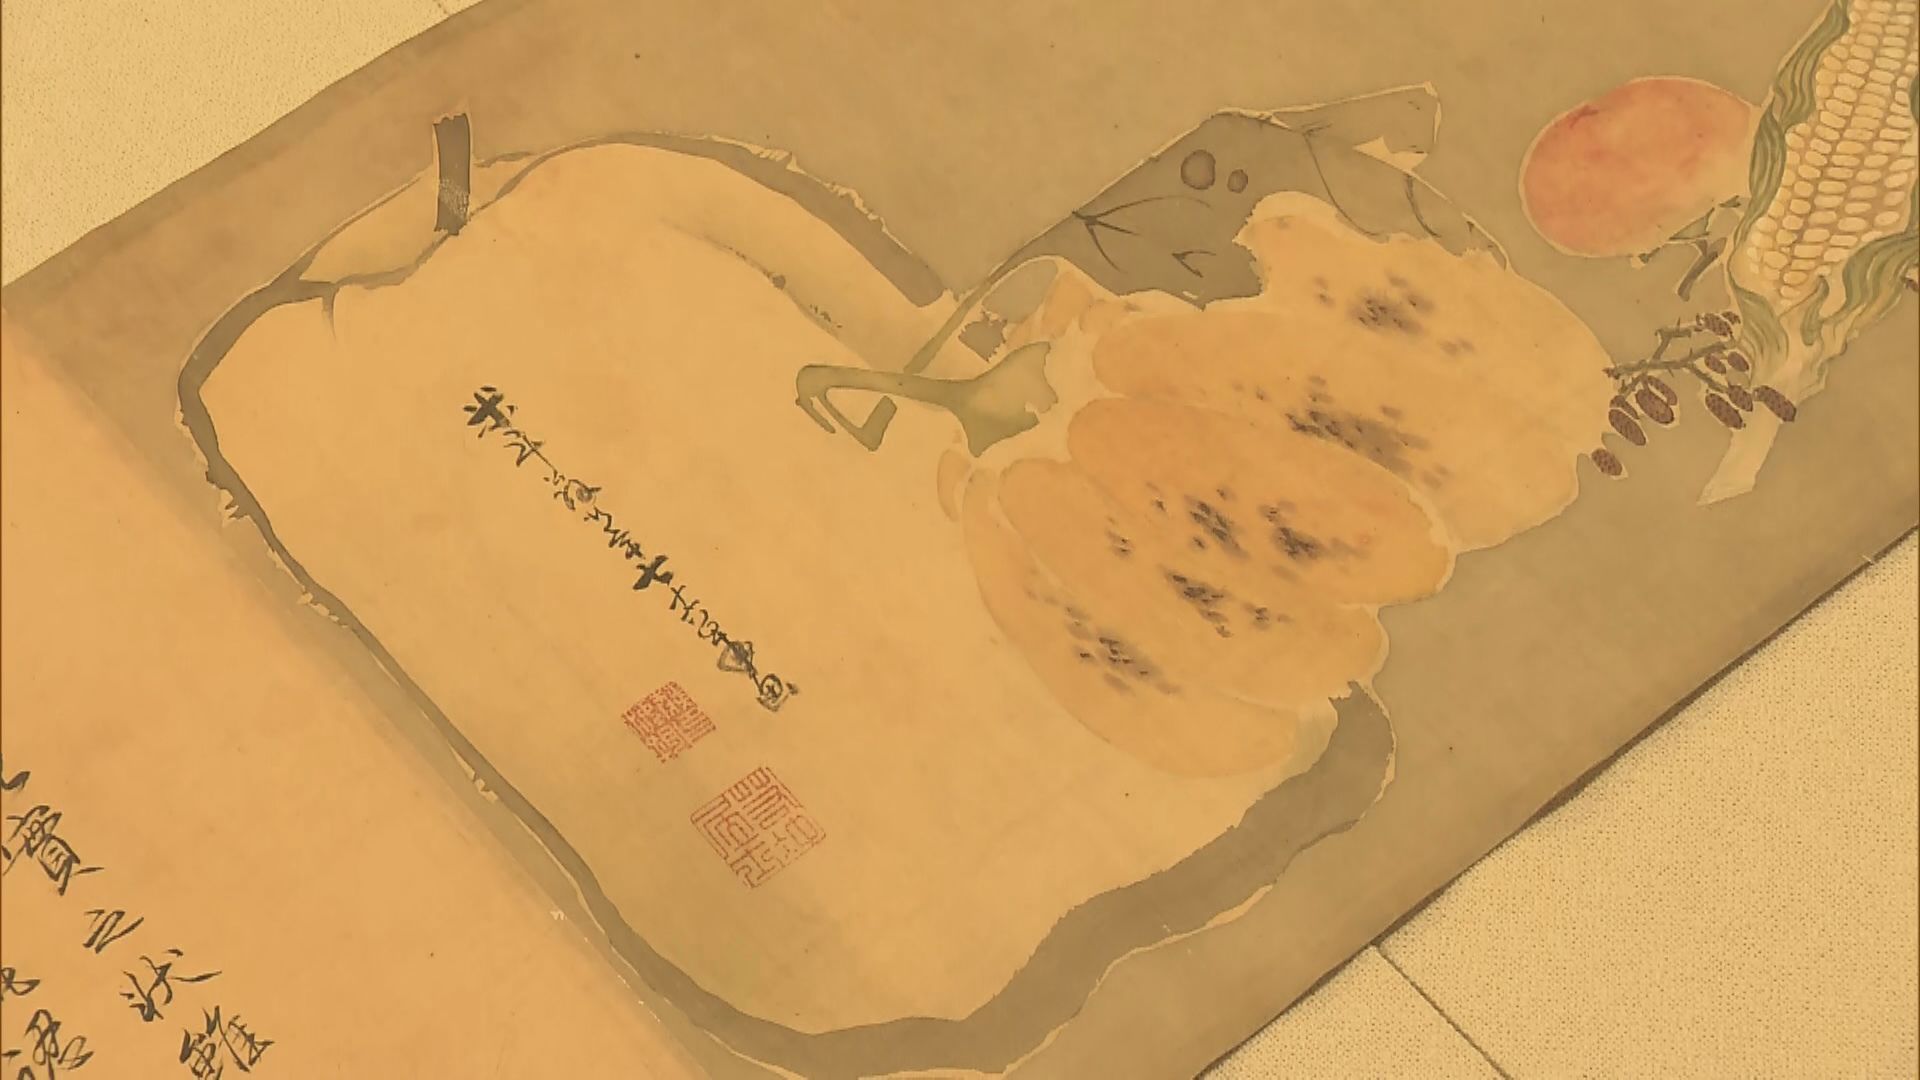 「奇想の絵師」伊藤若冲の絵巻発見　世界に残る絵巻はわずか2点　瑞々しい野菜や果物が描かれた晩年の大作